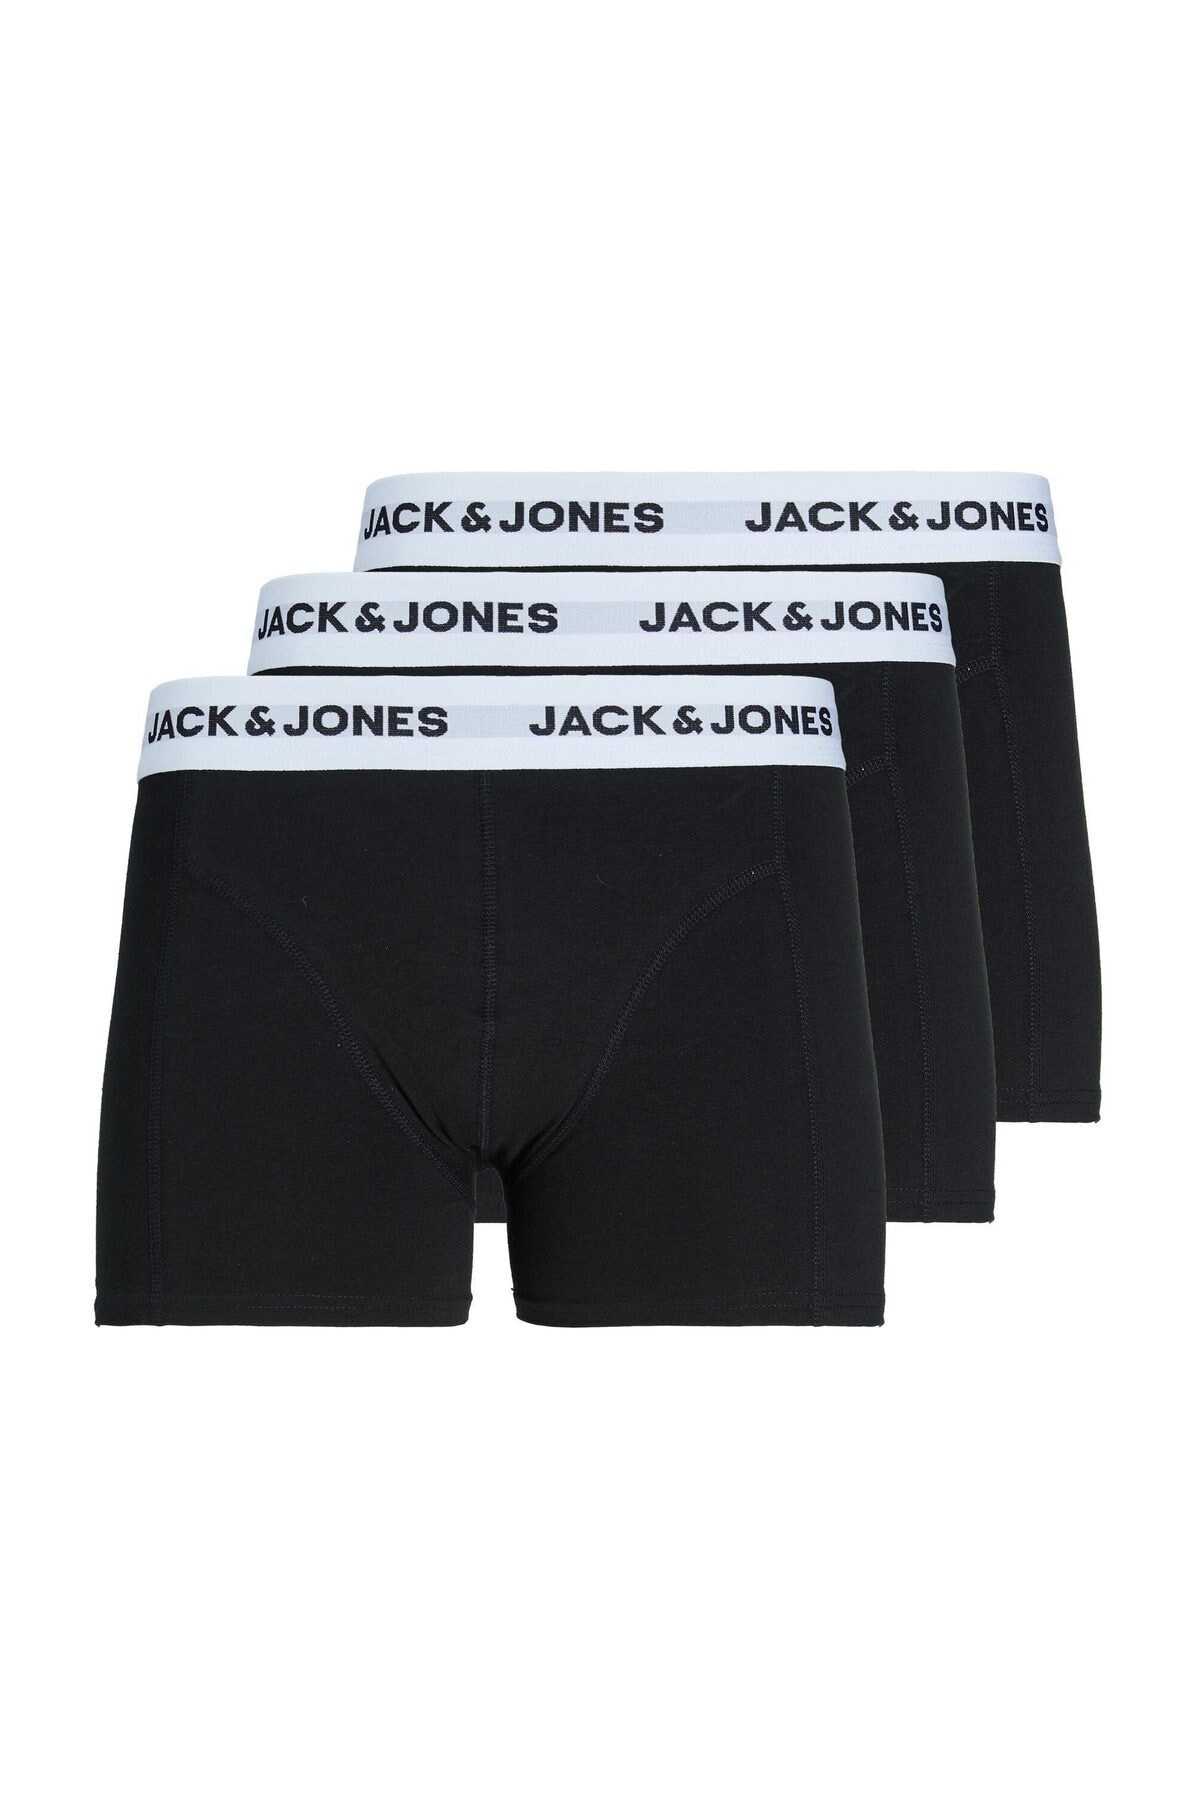 Jack & Jones Jacbasic White Wb Erkek Boxer 12213629